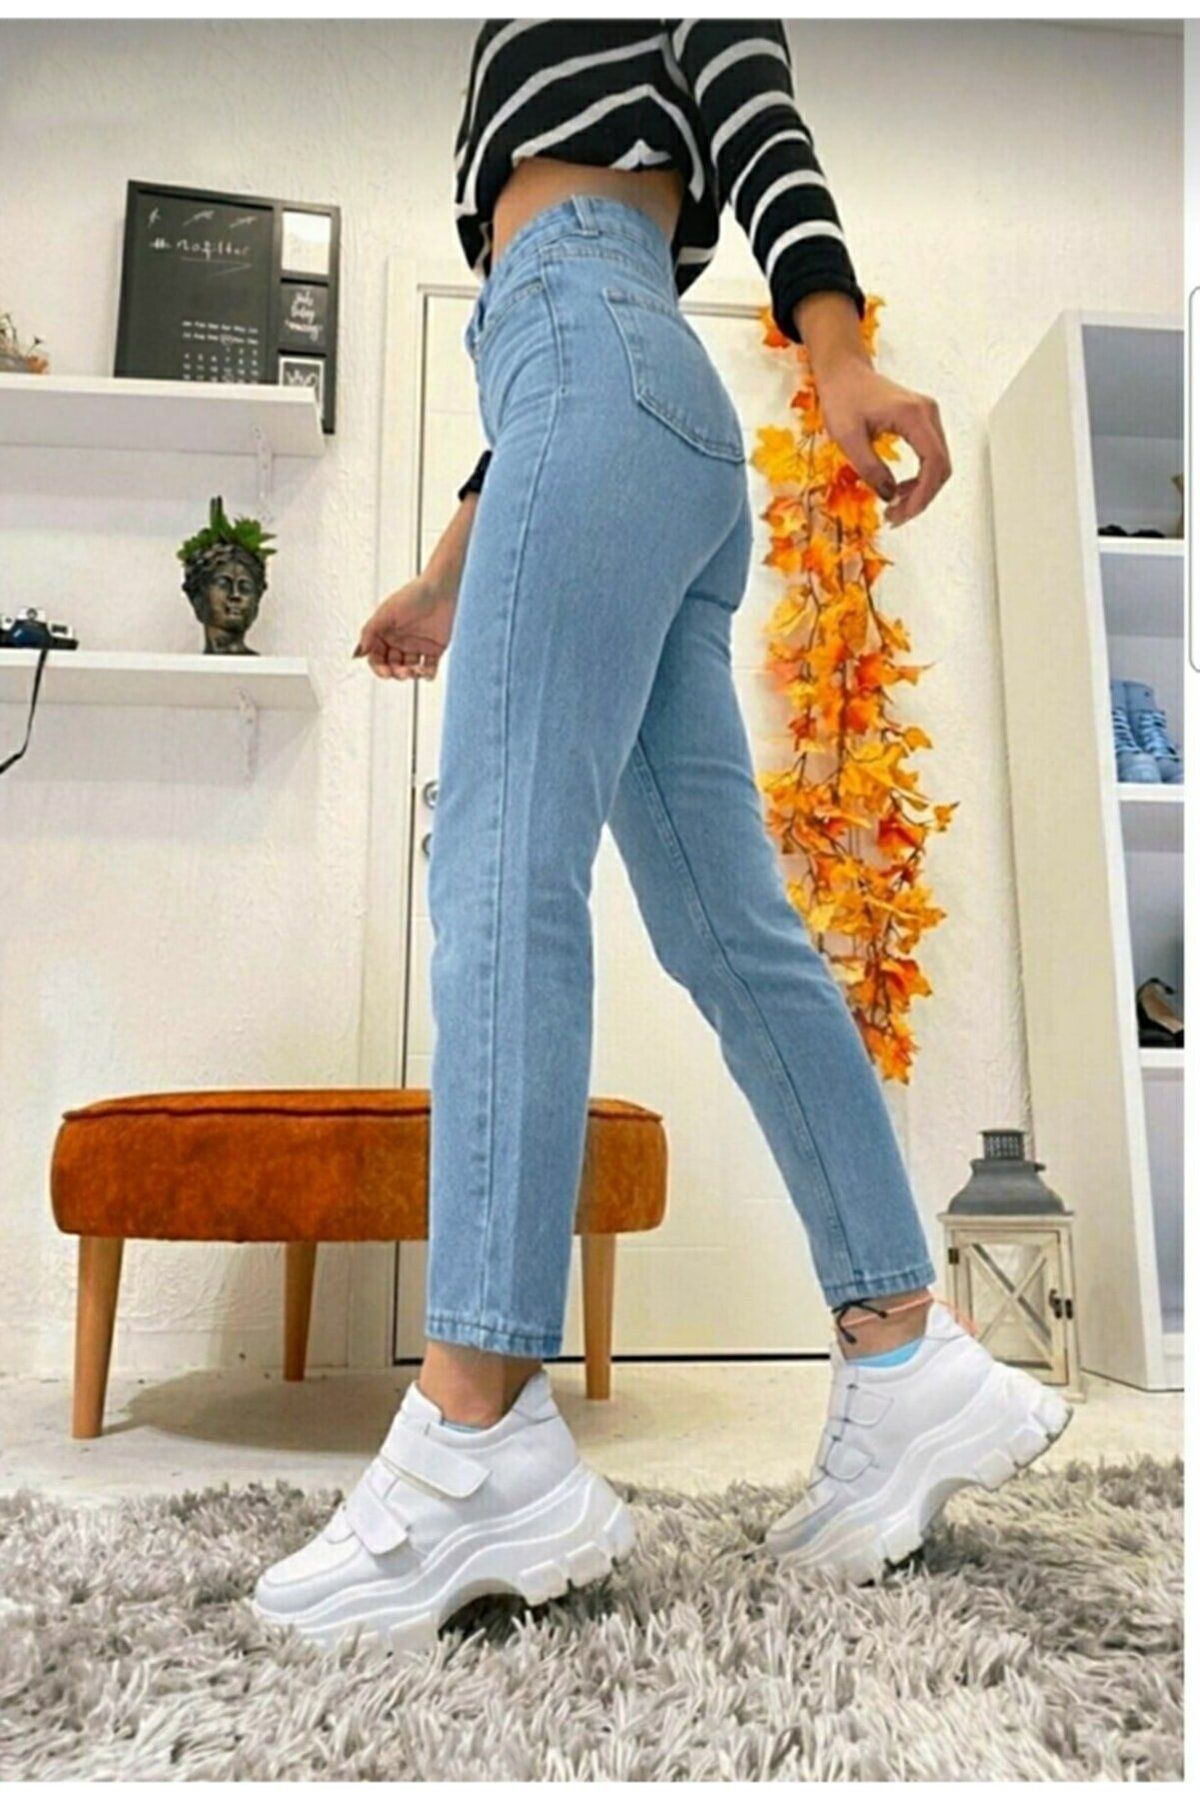 Buy HUEWomen's Jeggings & Tunic - Essential Denim Leggings - Stretchy Jeans  for Women - V Neck Legging Tee Online at desertcartCyprus